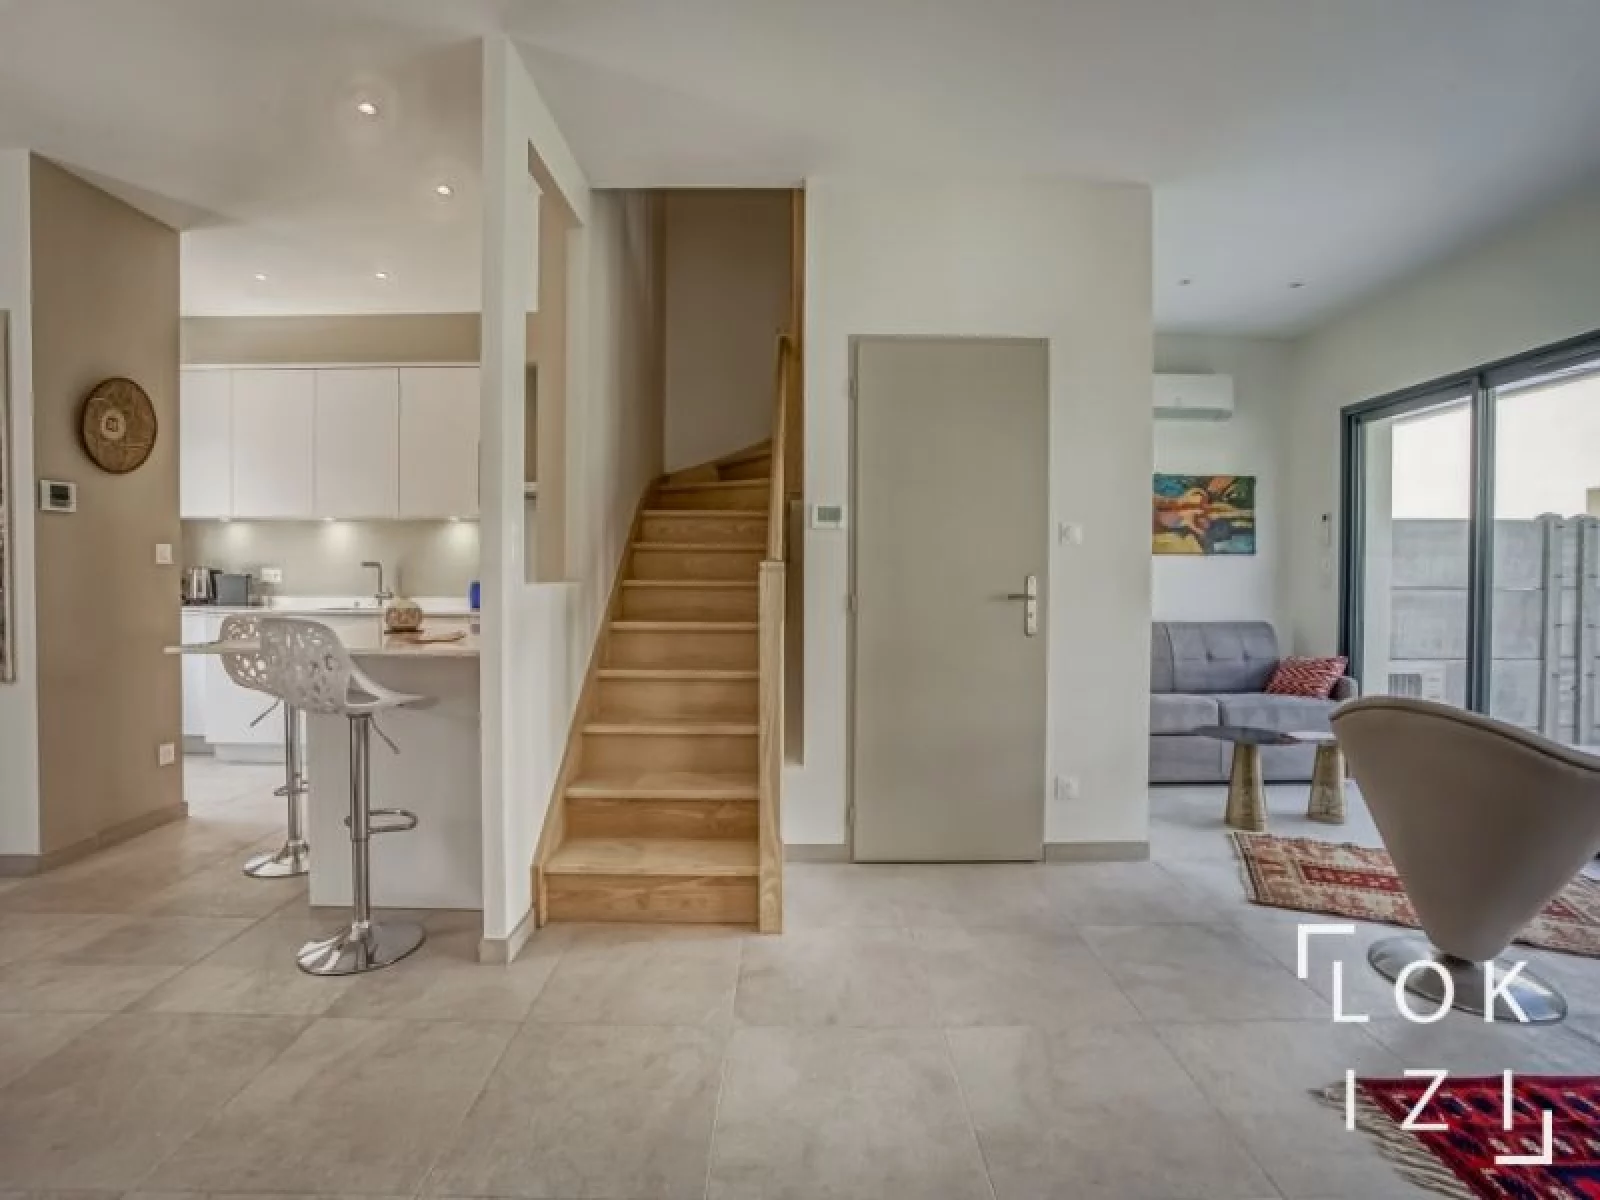 Location maison meuble 90m + jardin 85m + garage (Bordeaux - Mrignac)